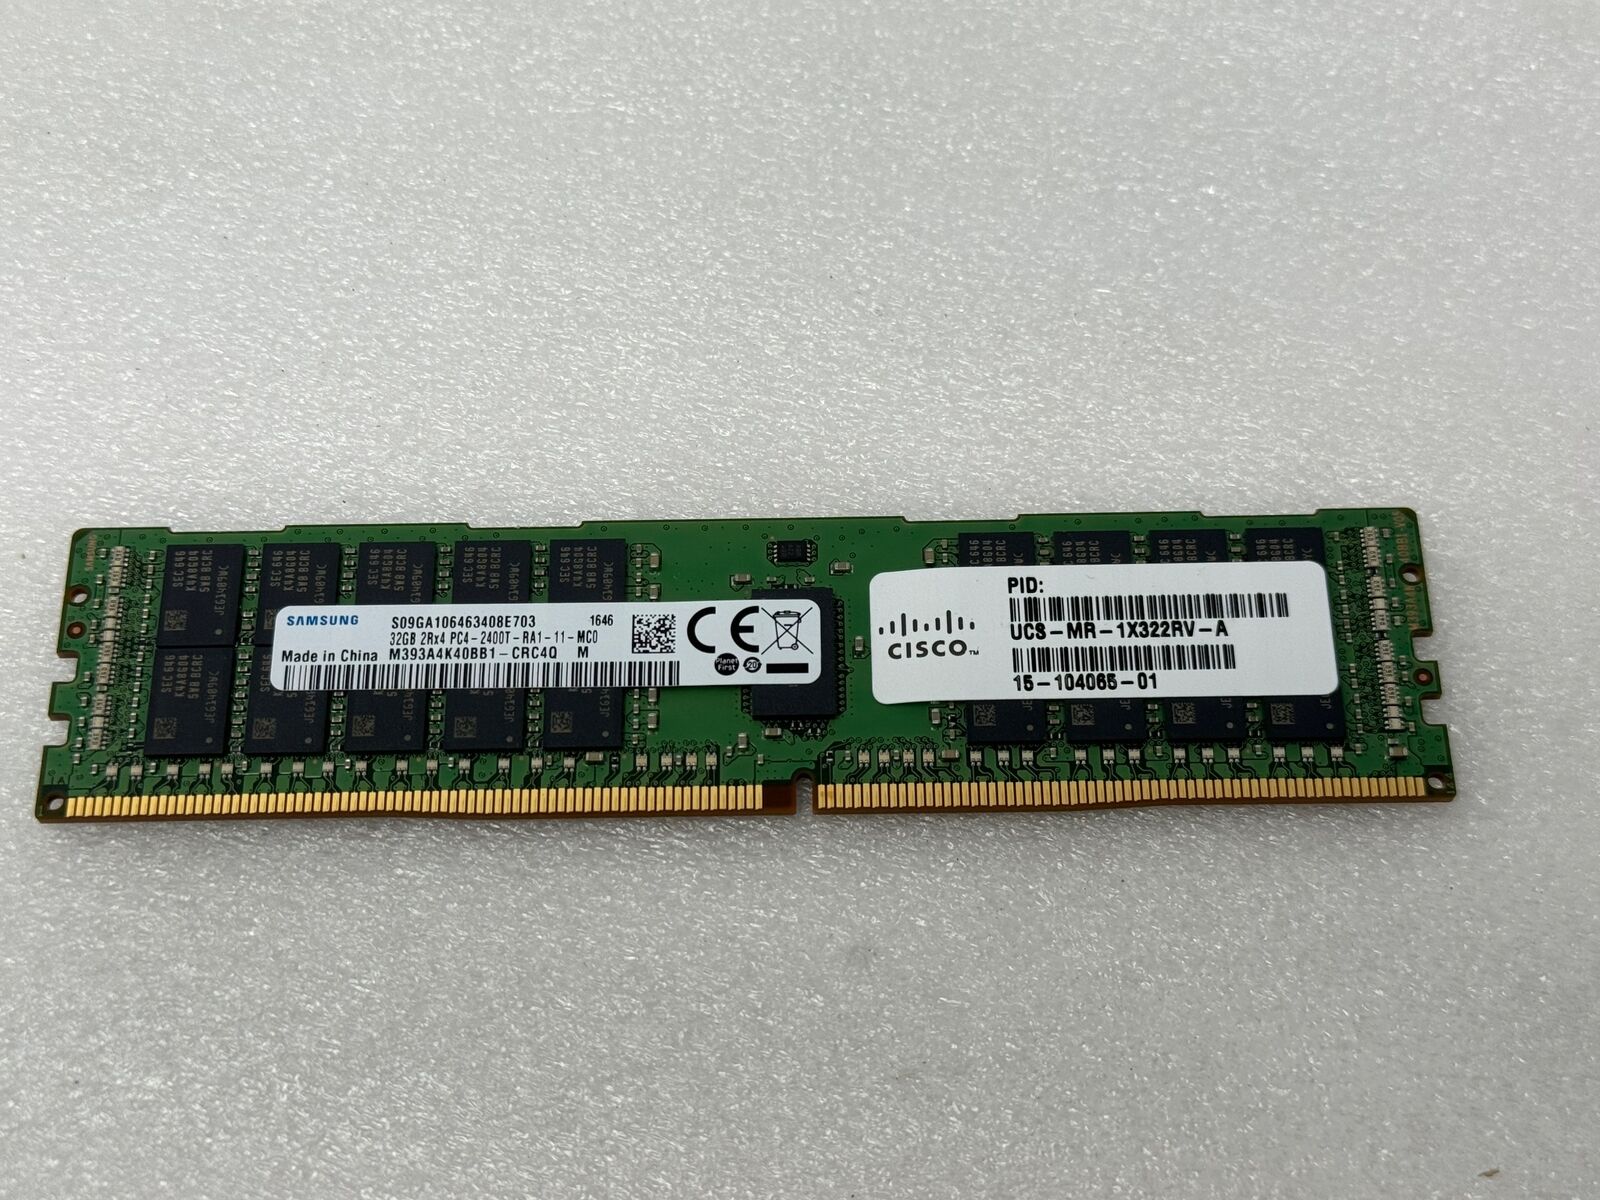 UCS-MR-1X322RV-A 15-104065-01 CISCO 32GB 2RX4 PC4-2400T-R MEMORY MODULE (1X32GB)